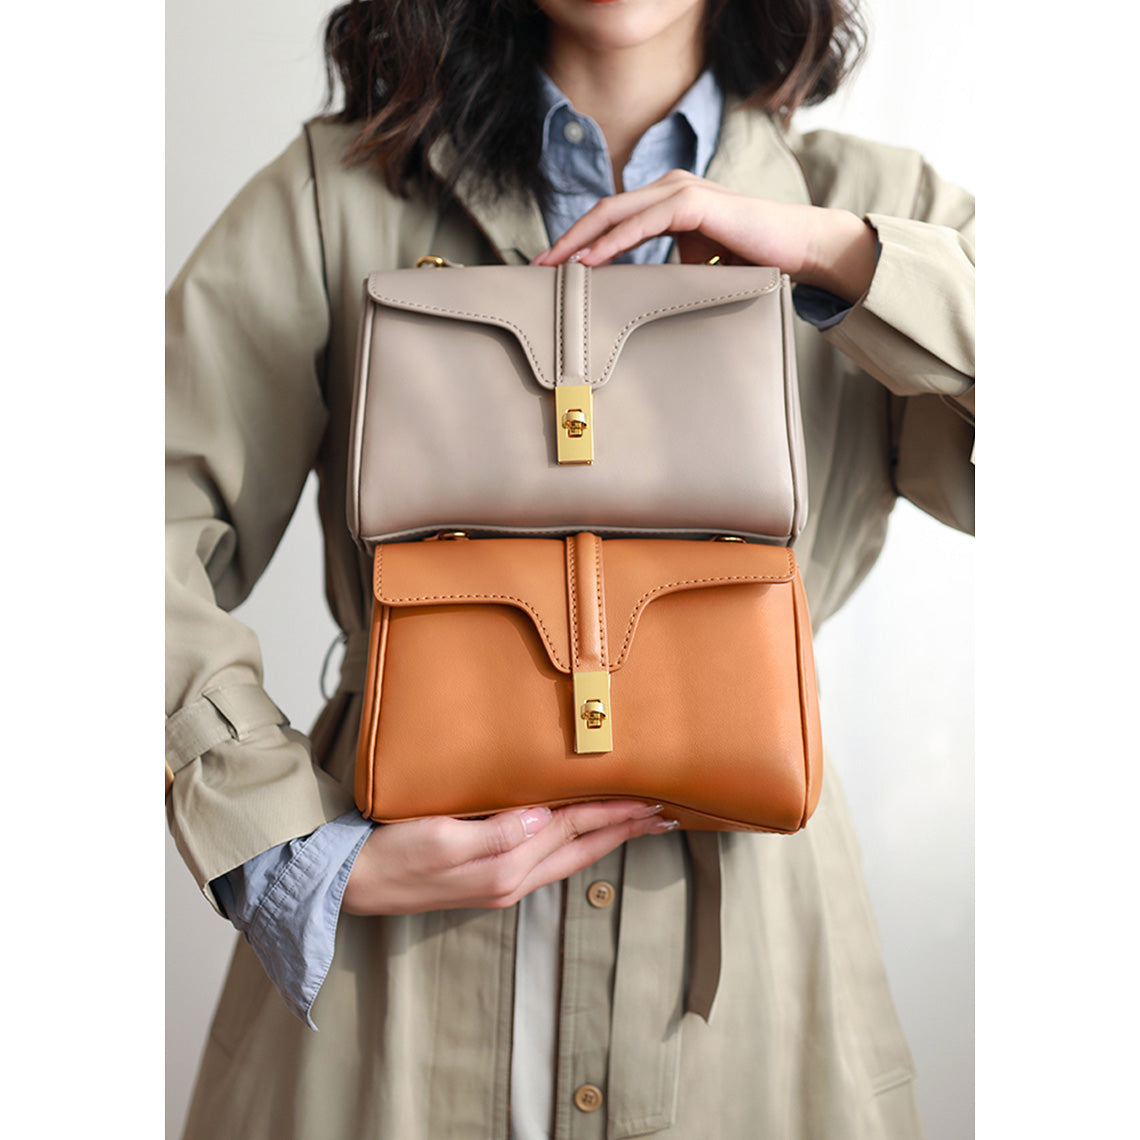 Leather Designer Soft Tote Bag DIY Kit - Brown & Large – POPSEWING®